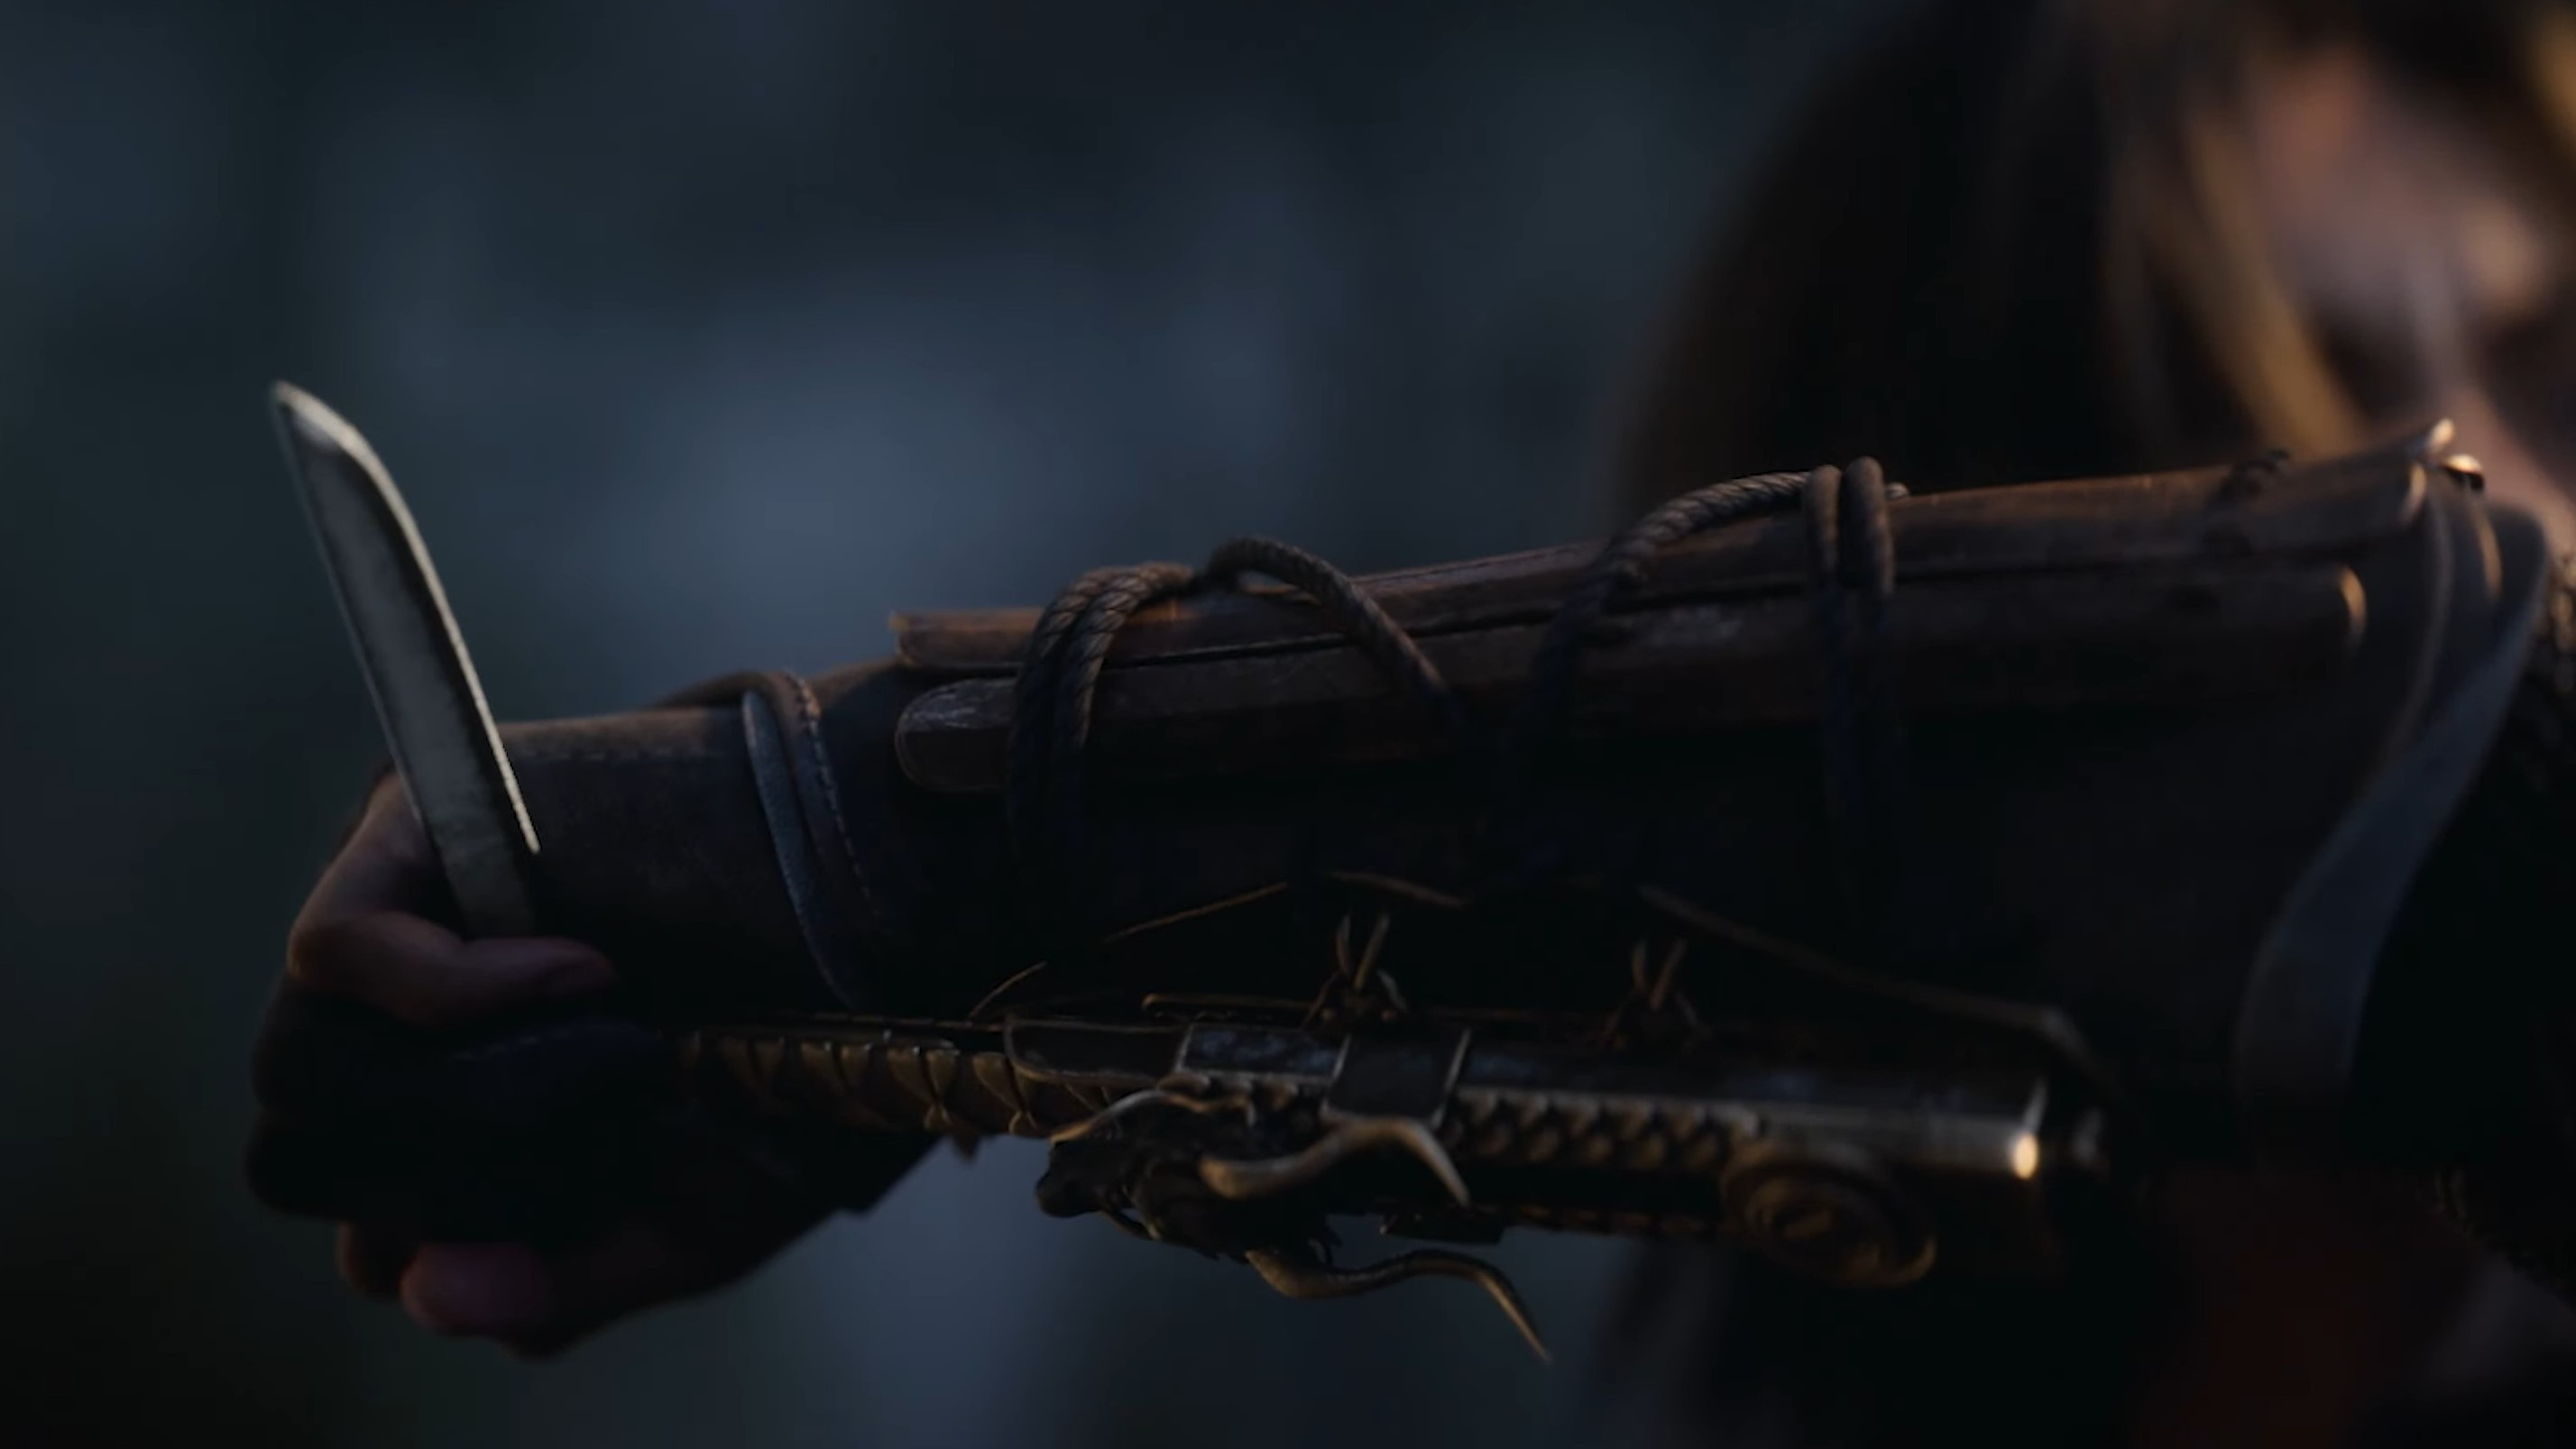  Кадр из кинематографического трейлера Assassin's Creed Shadows, показывающий скрытый клинок под прямым углом